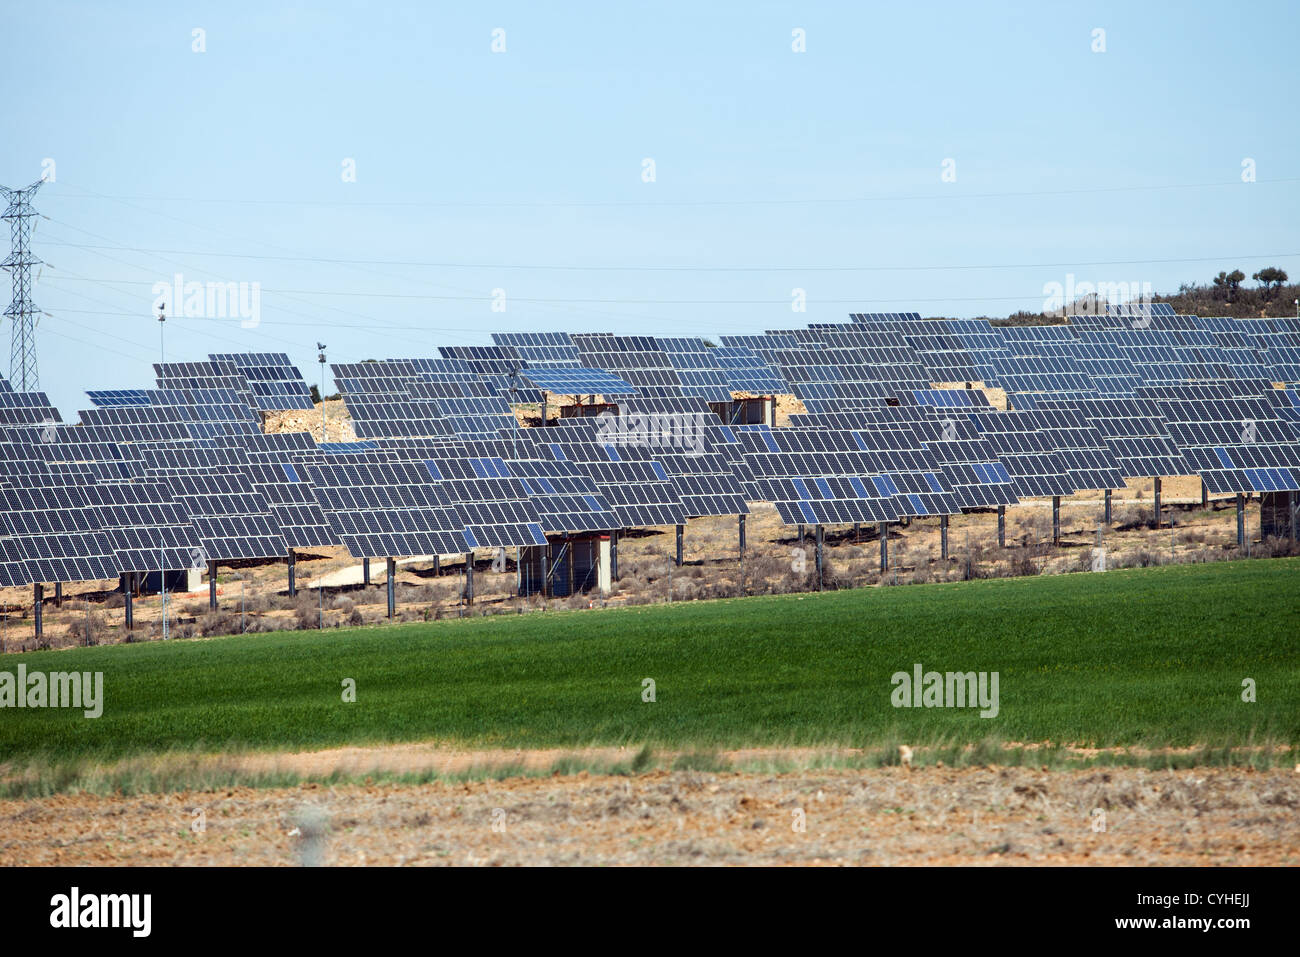 Ferme solaire de production d'électricité massive hors de l'énergie solaire Banque D'Images